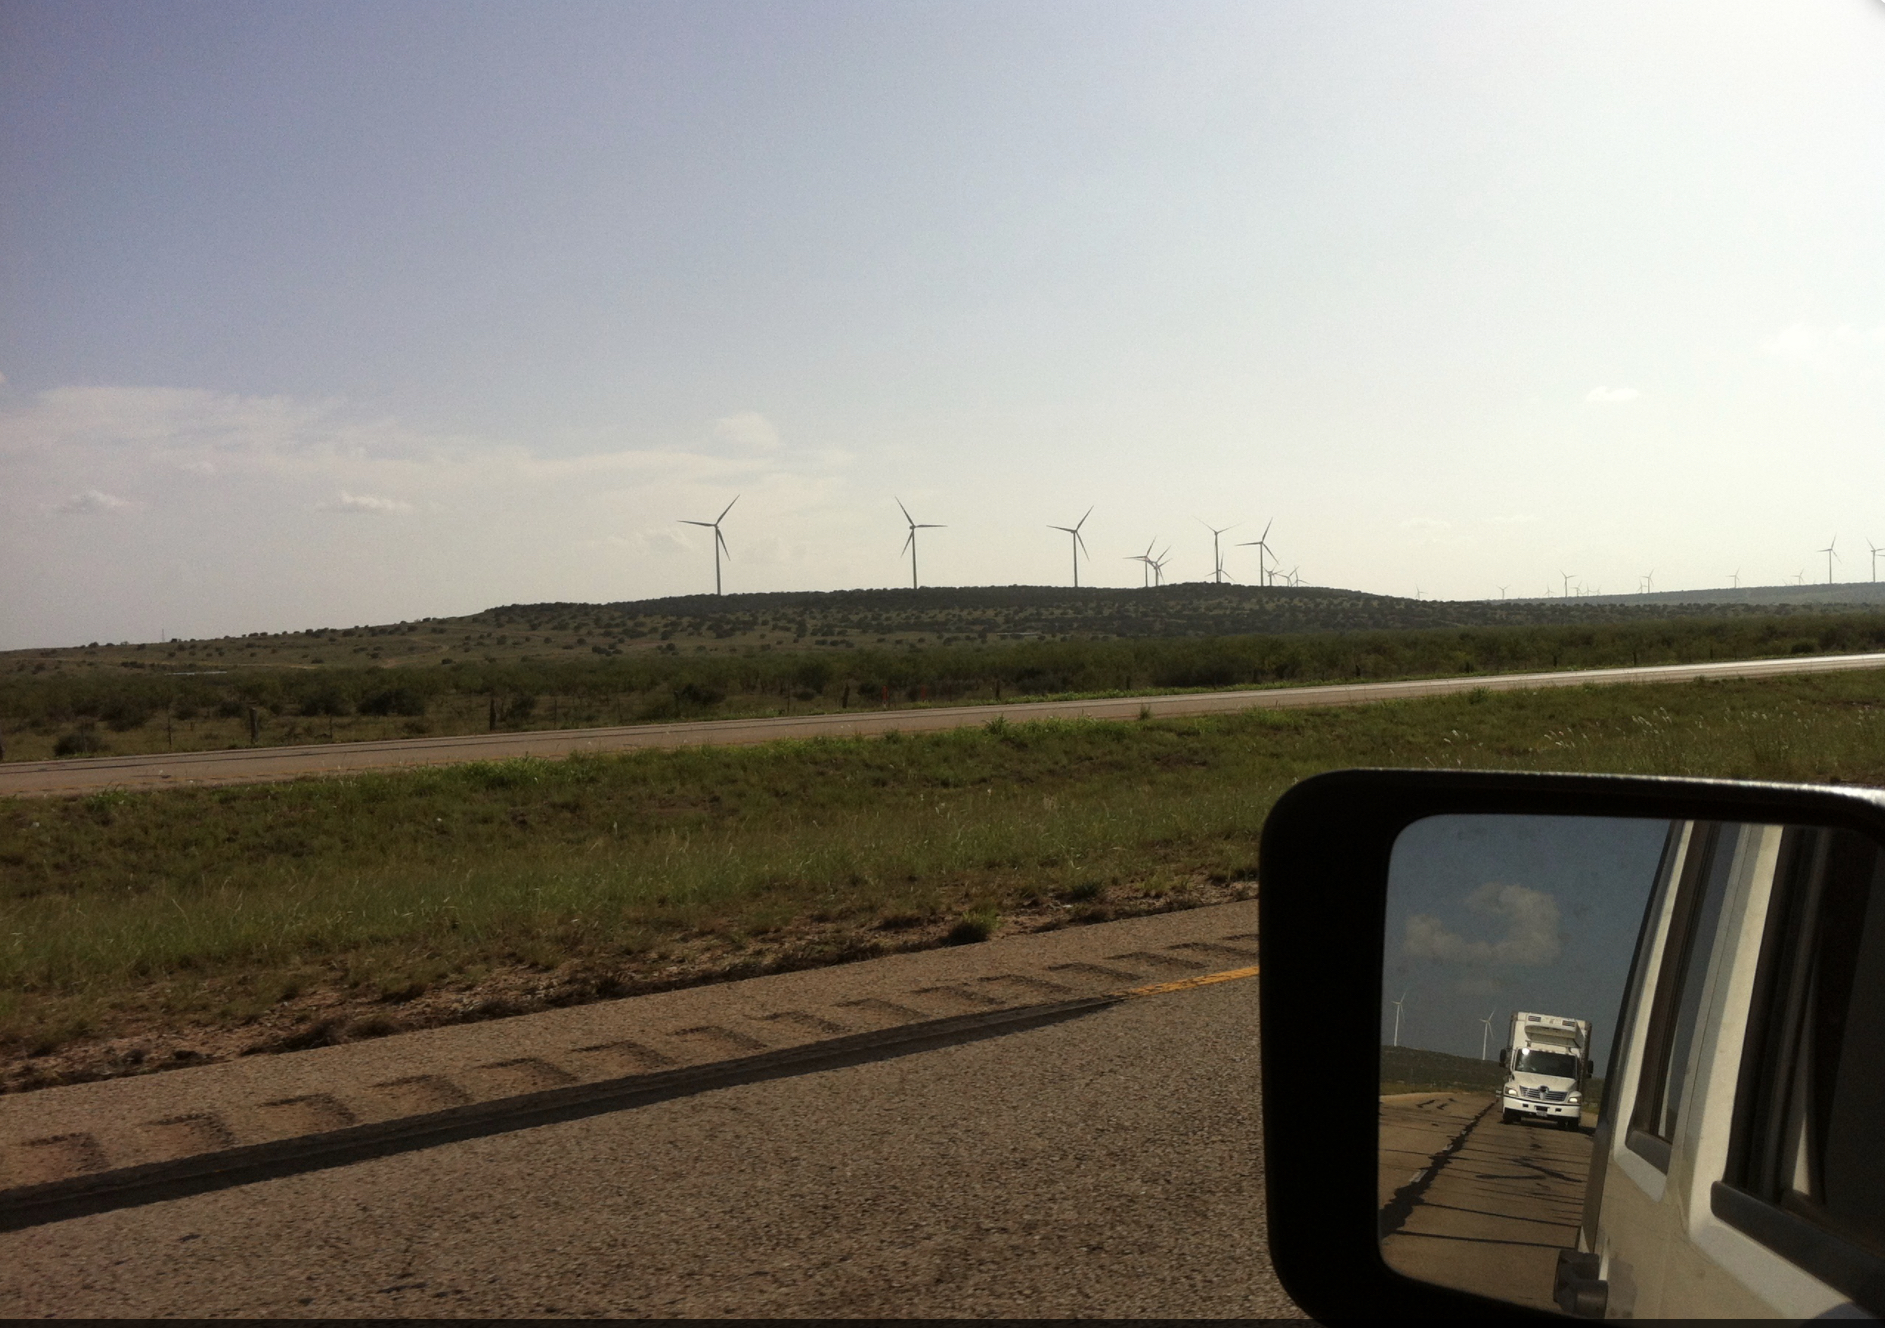 Windmills from afar.